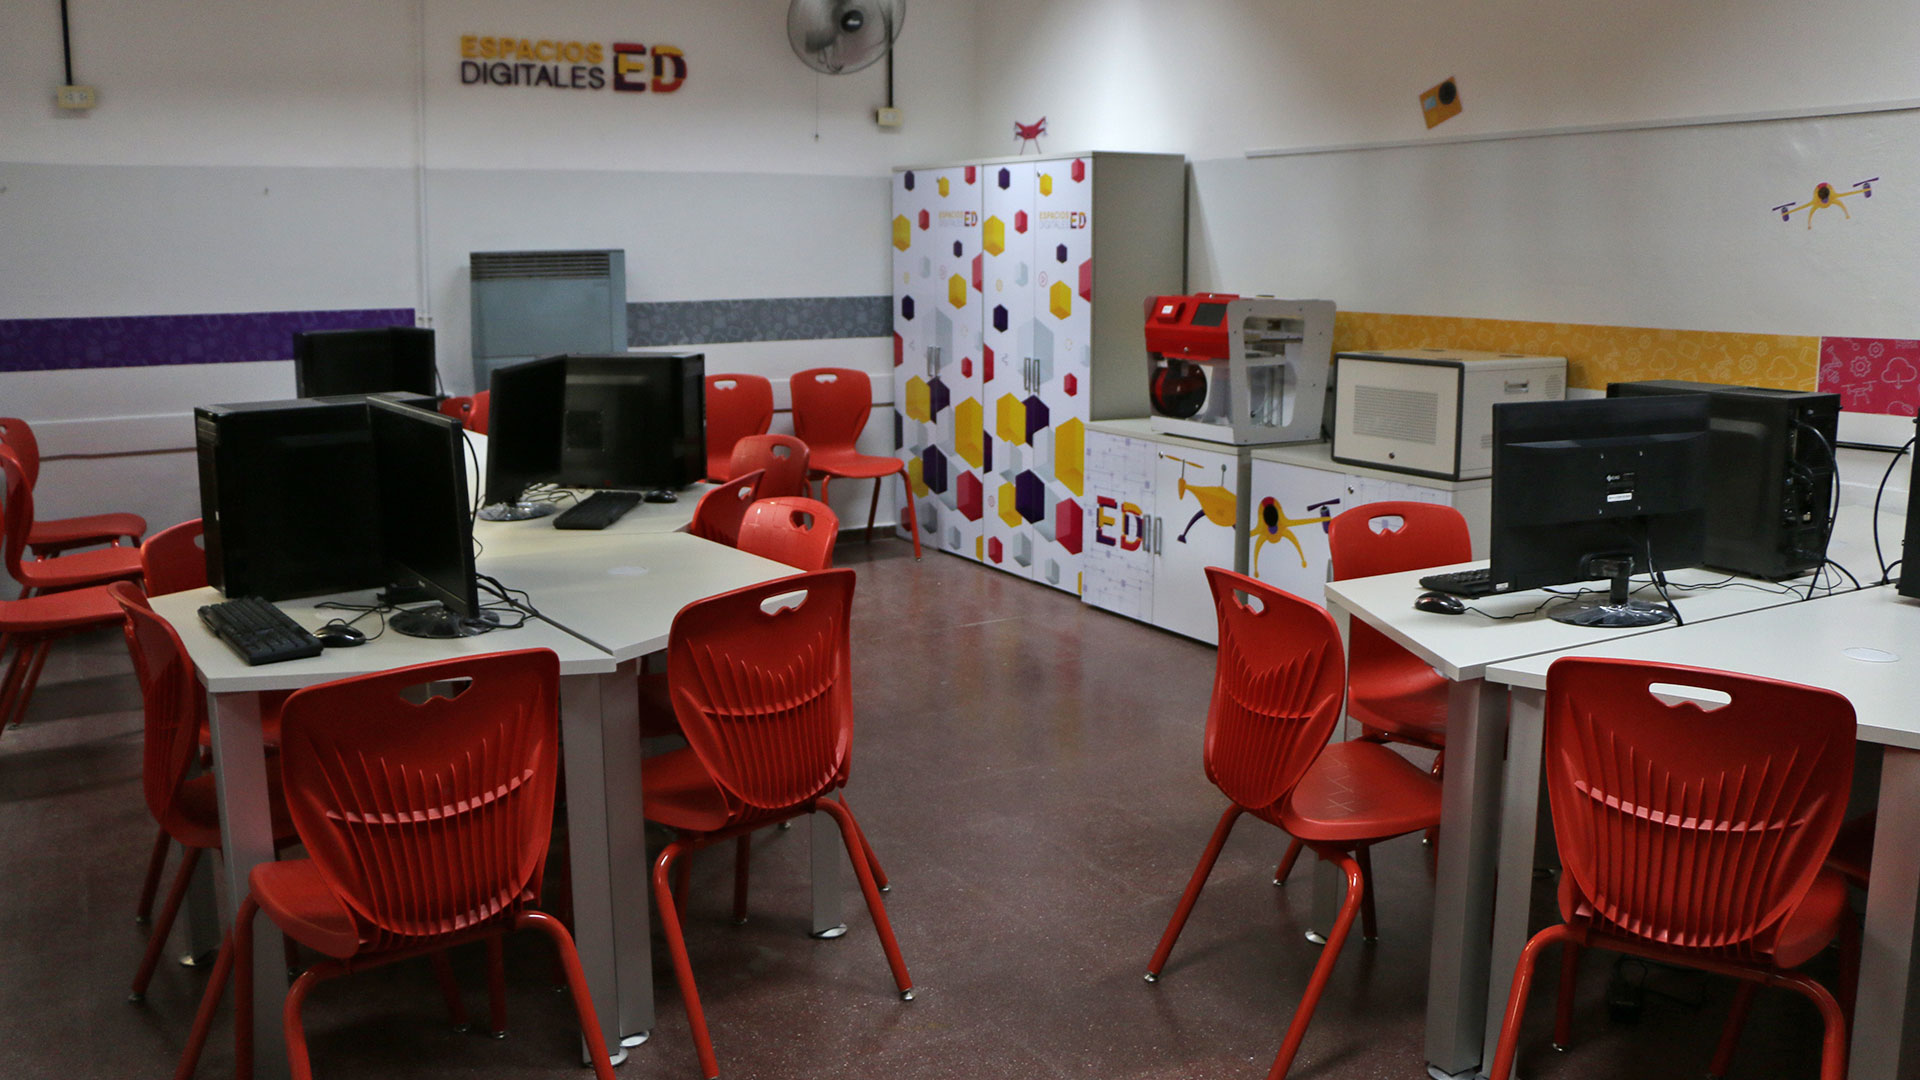 La primera propuesta de la Ciudad es abrir las escuelas como espacios digitales (Lihue Althabe)